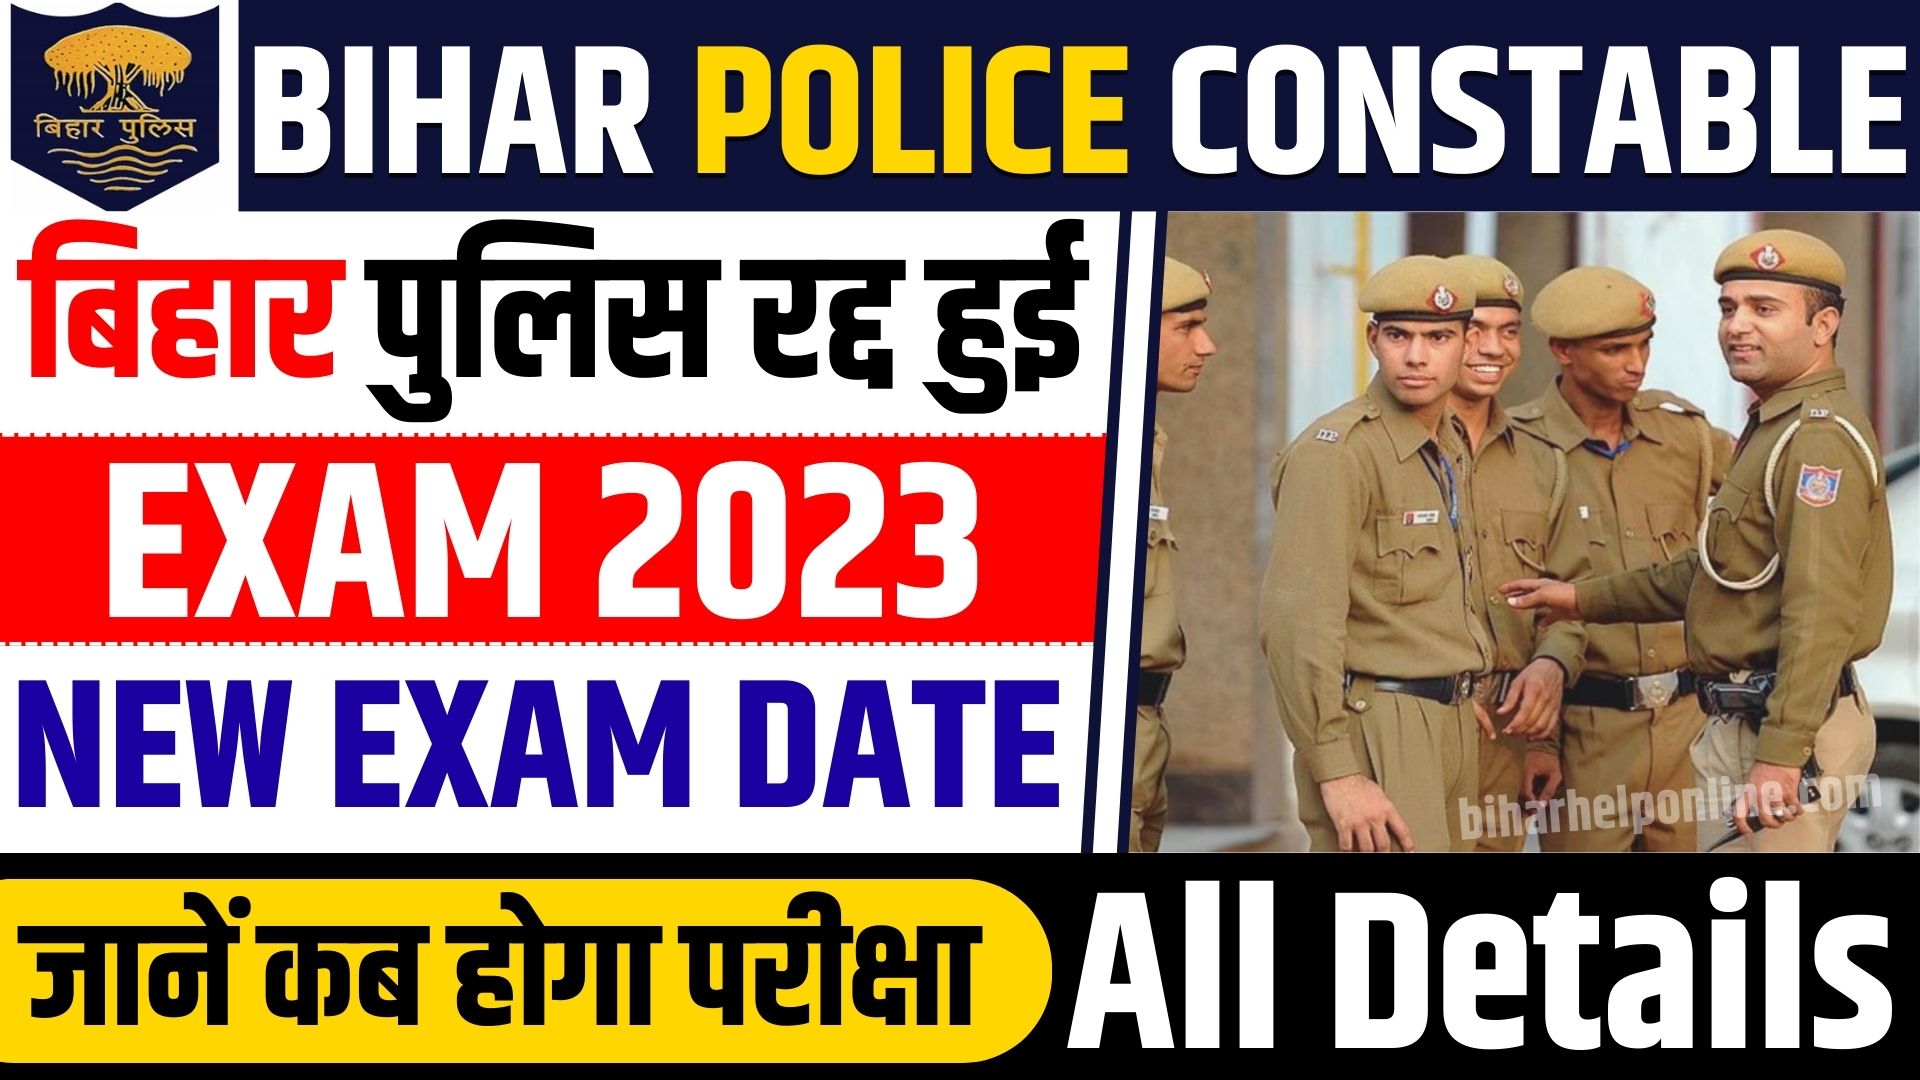 Bihar Police Constable New Exam Date 2023 